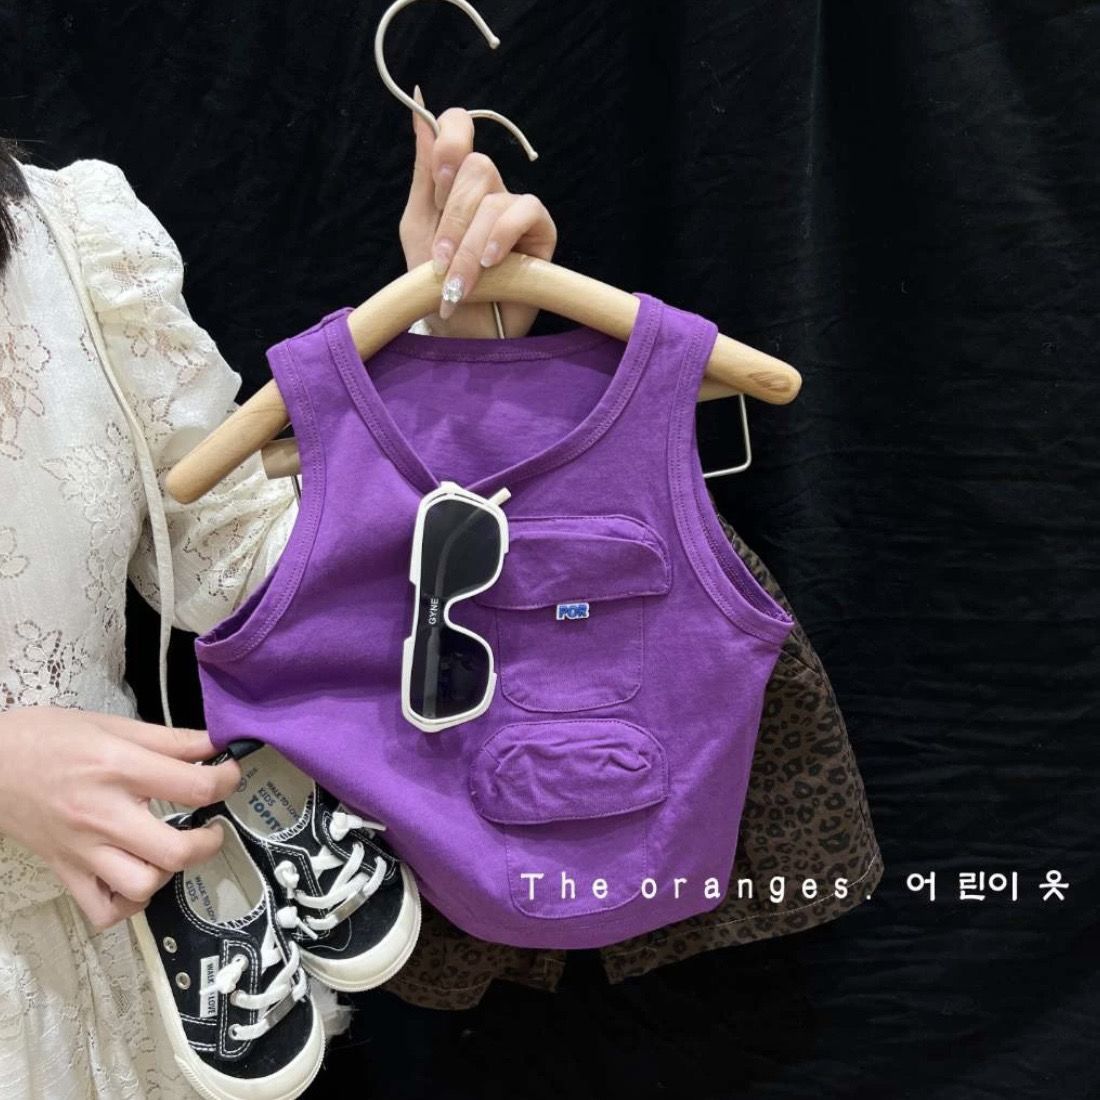 韩国洋气男童夏装套装儿童帅时髦豹纹短裤宝宝百搭紫色背心两件套